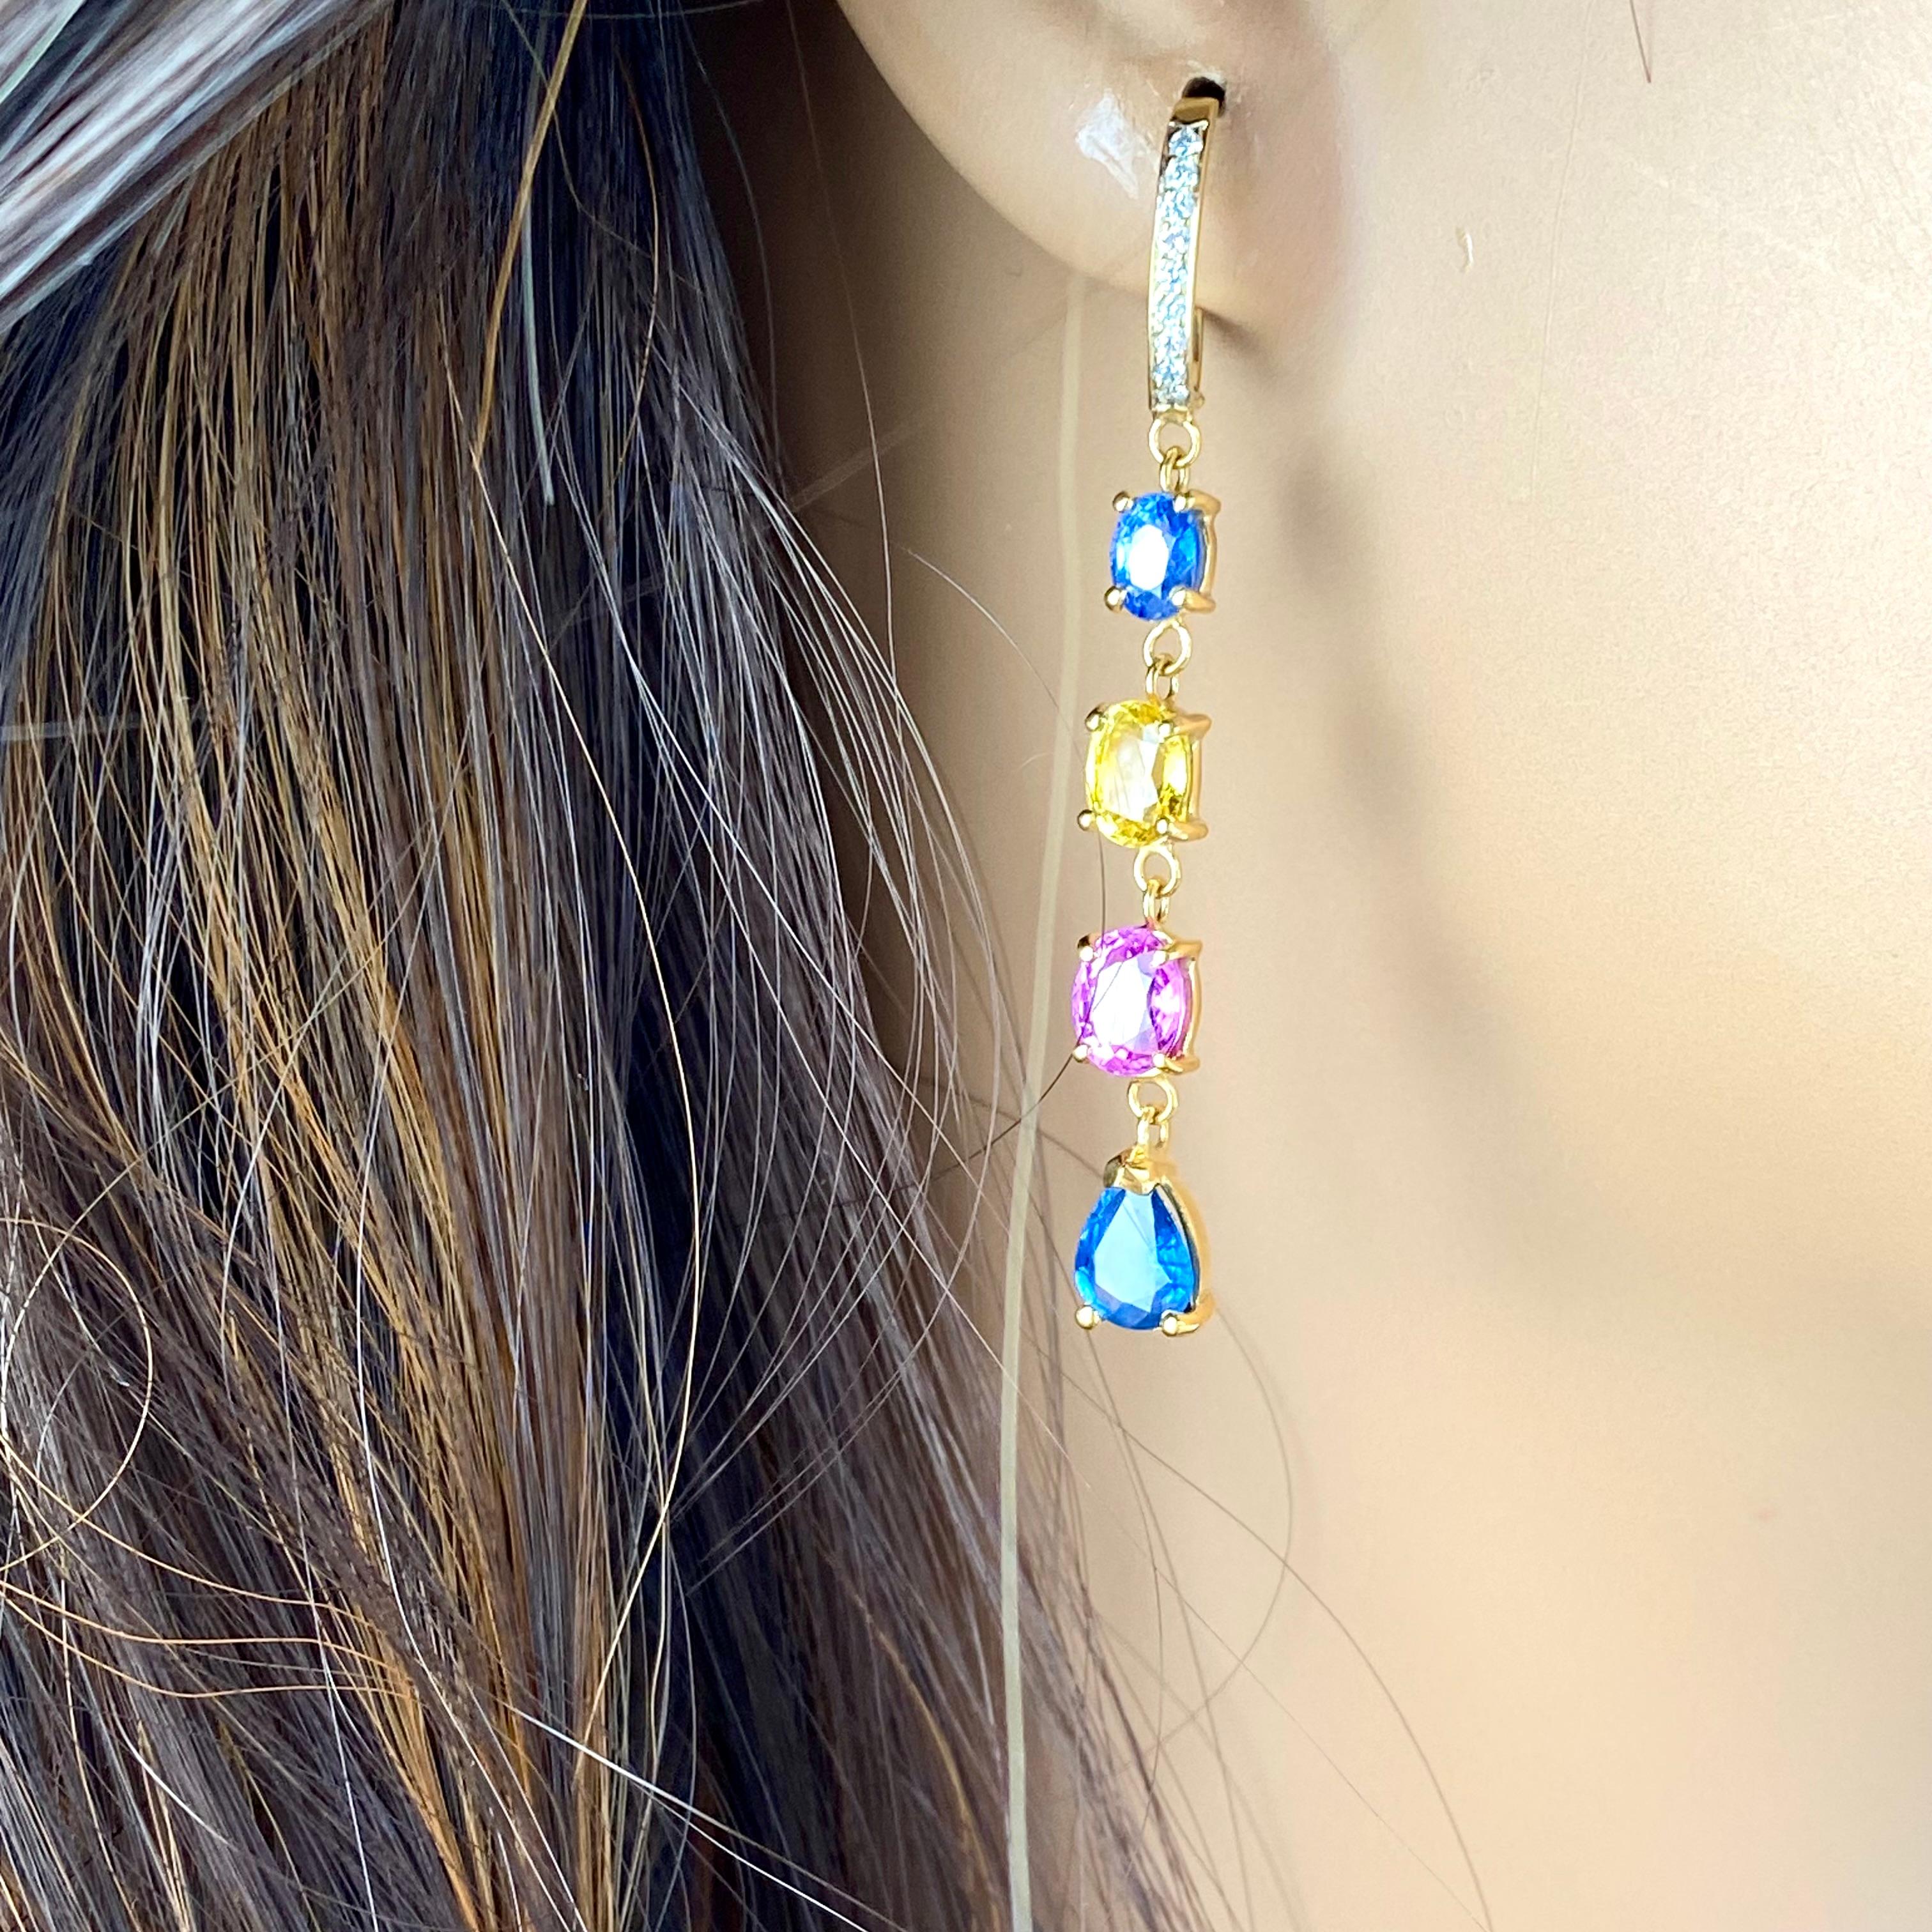 Unsere atemberaubenden Ohrringe aus 14 Karat Gelbgold mit mehrfarbigen Edelsteinen und Diamanten bestechen durch ihre exquisite Schönheit und ihre leuchtenden Farbtöne. Diese atemberaubenden Ohrringe haben ein zartes Reifendesign, das aus luxuriösem